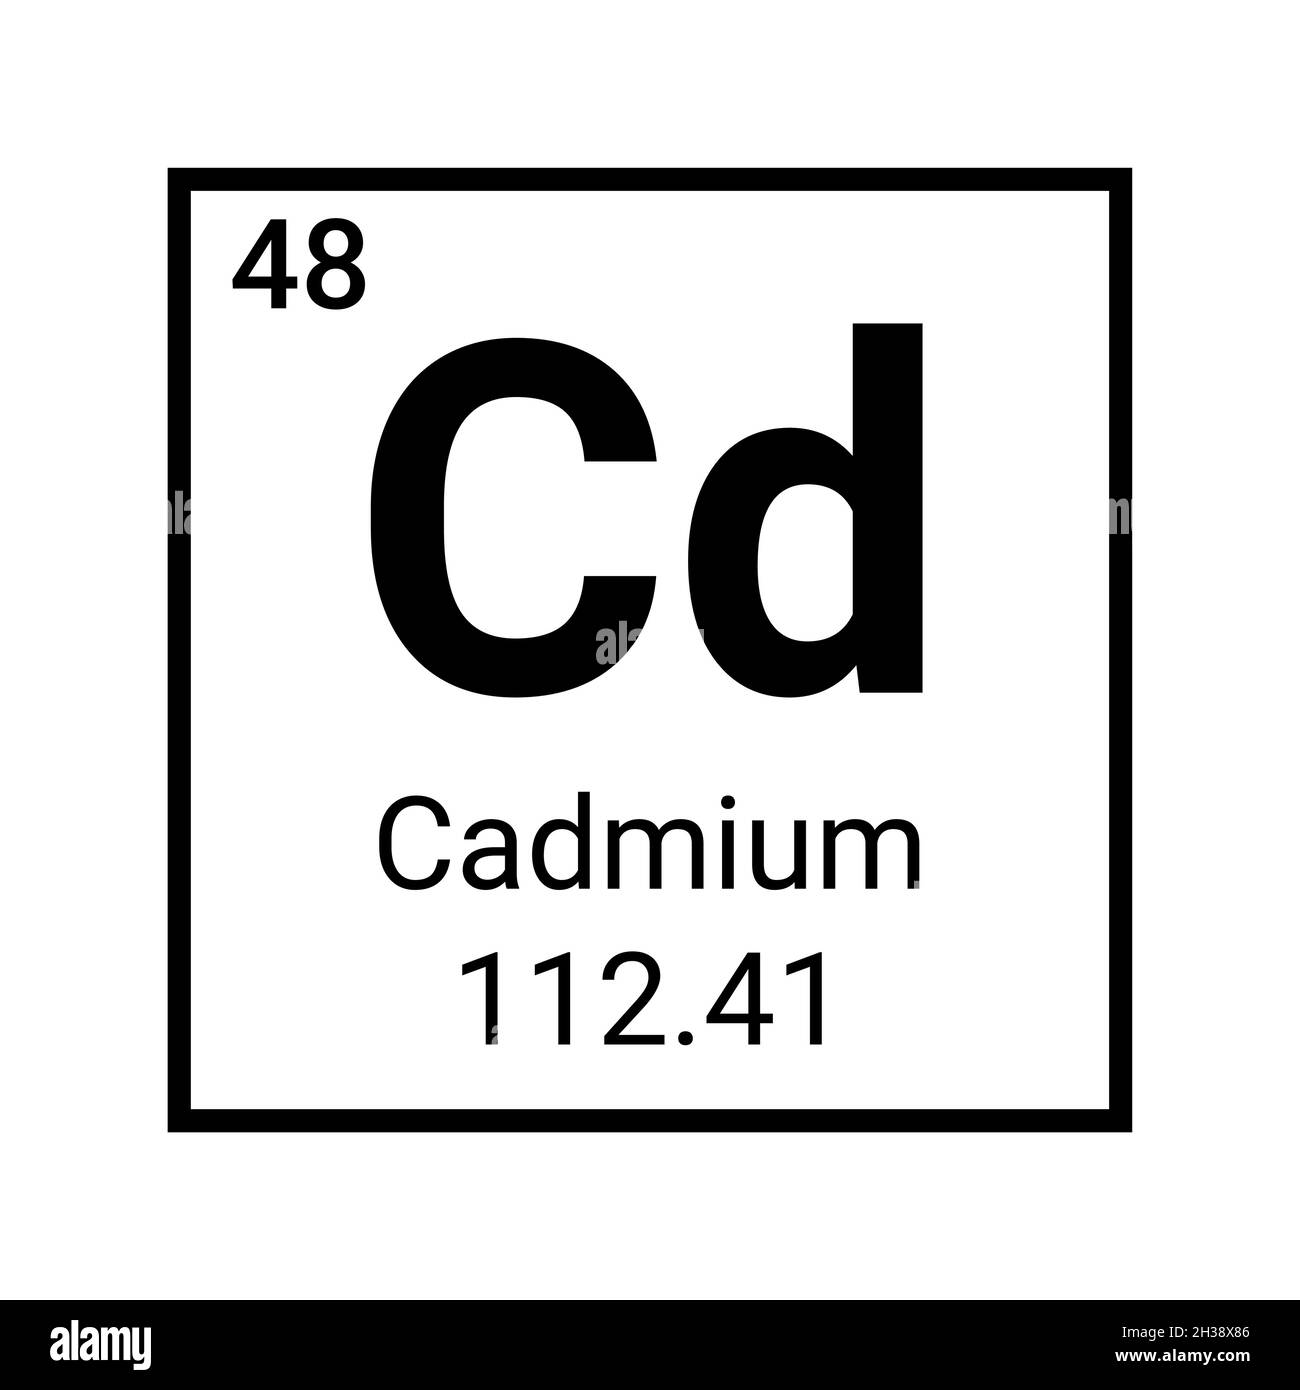 Cadmium periodic table element. Cadmium symbol atom chemistry Stock Vector